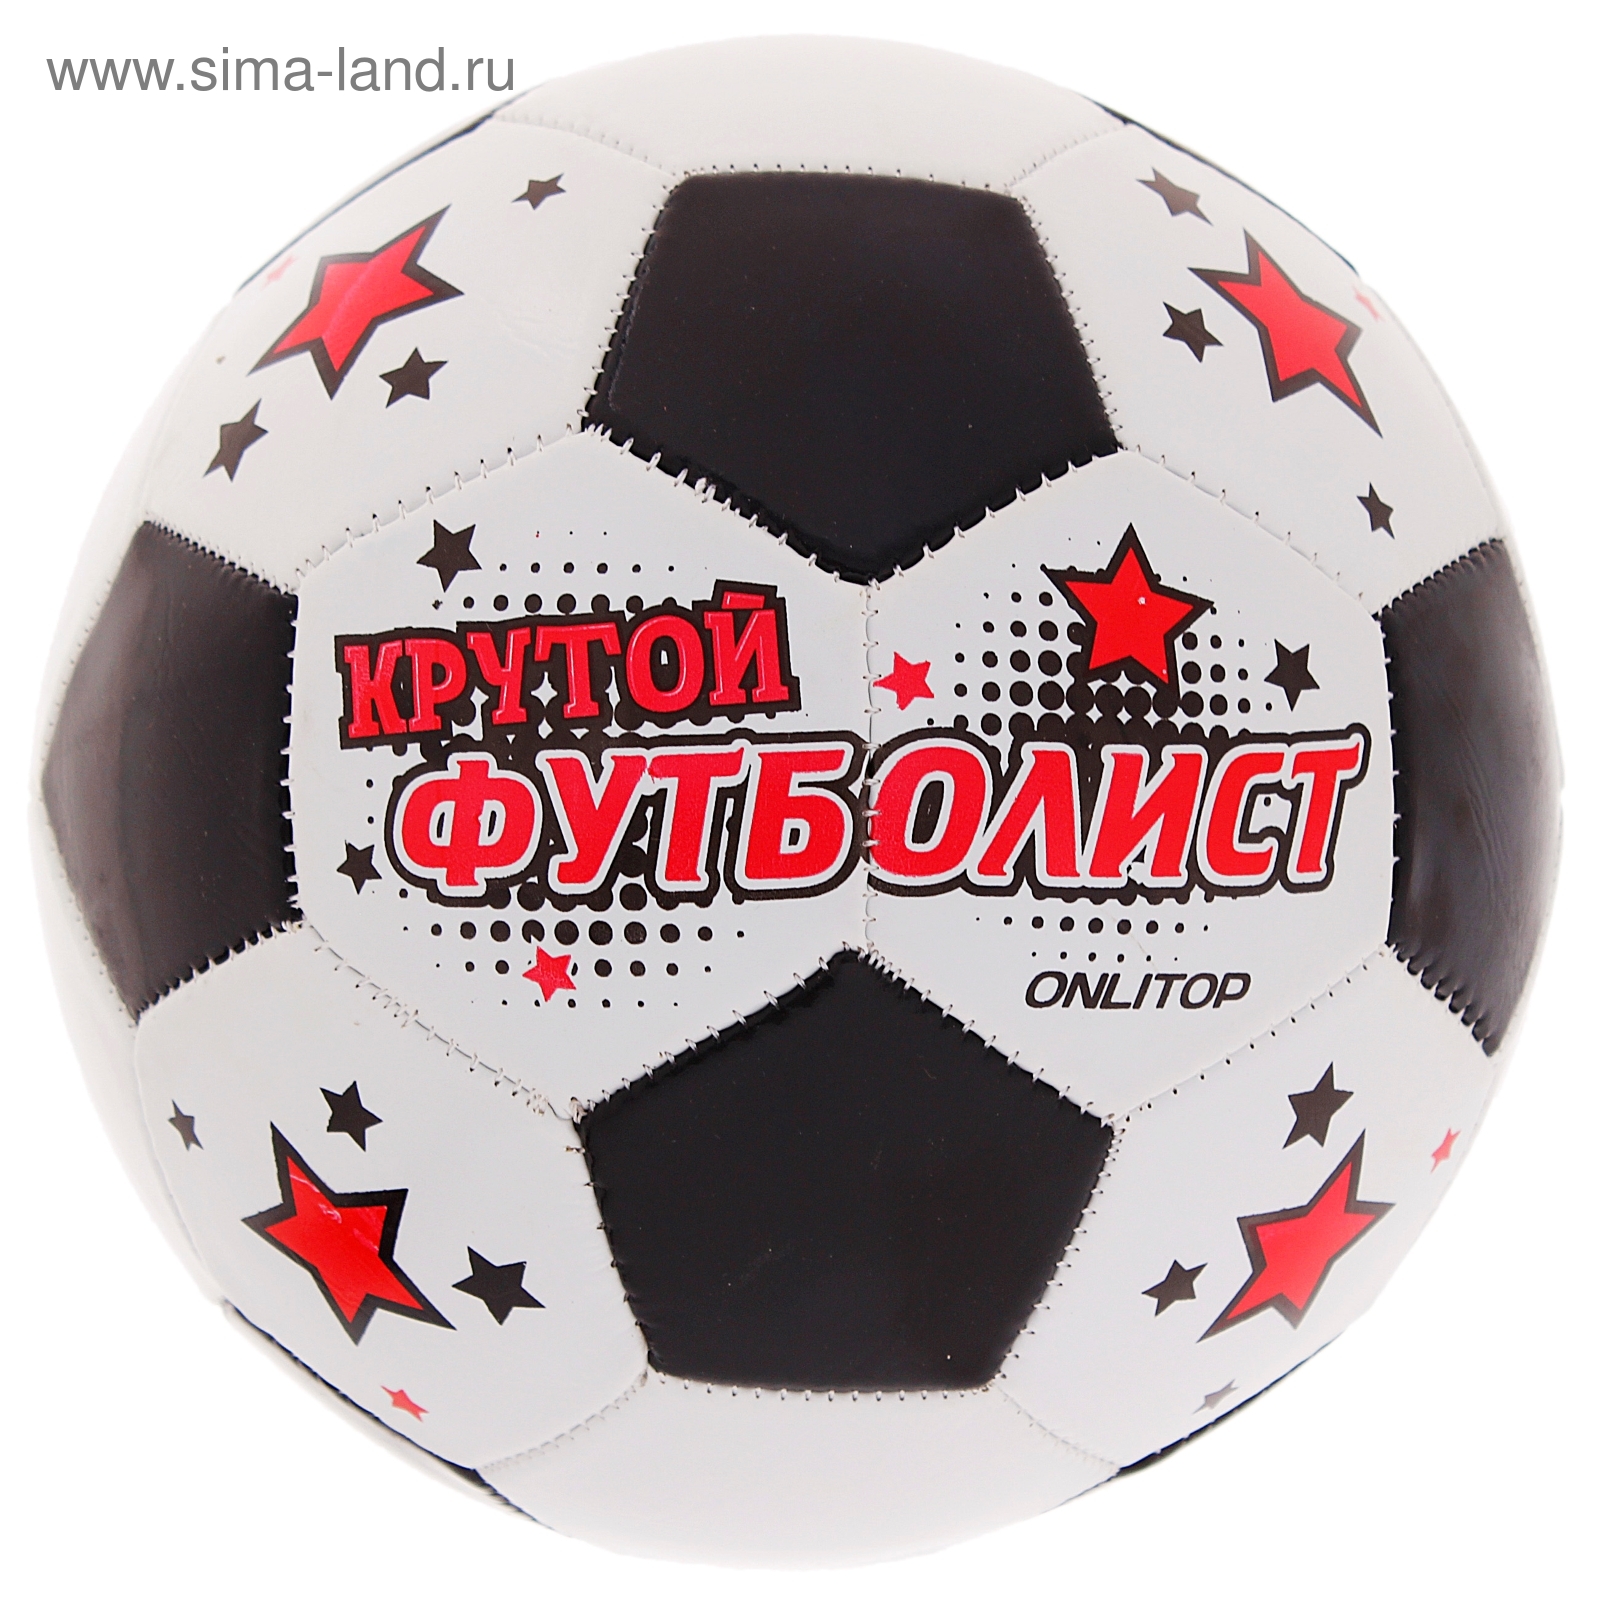 Мяч футбольный "Крутой футболист", 32 панели, PVC, 2 подслоя, машинная сшивка, размер 5